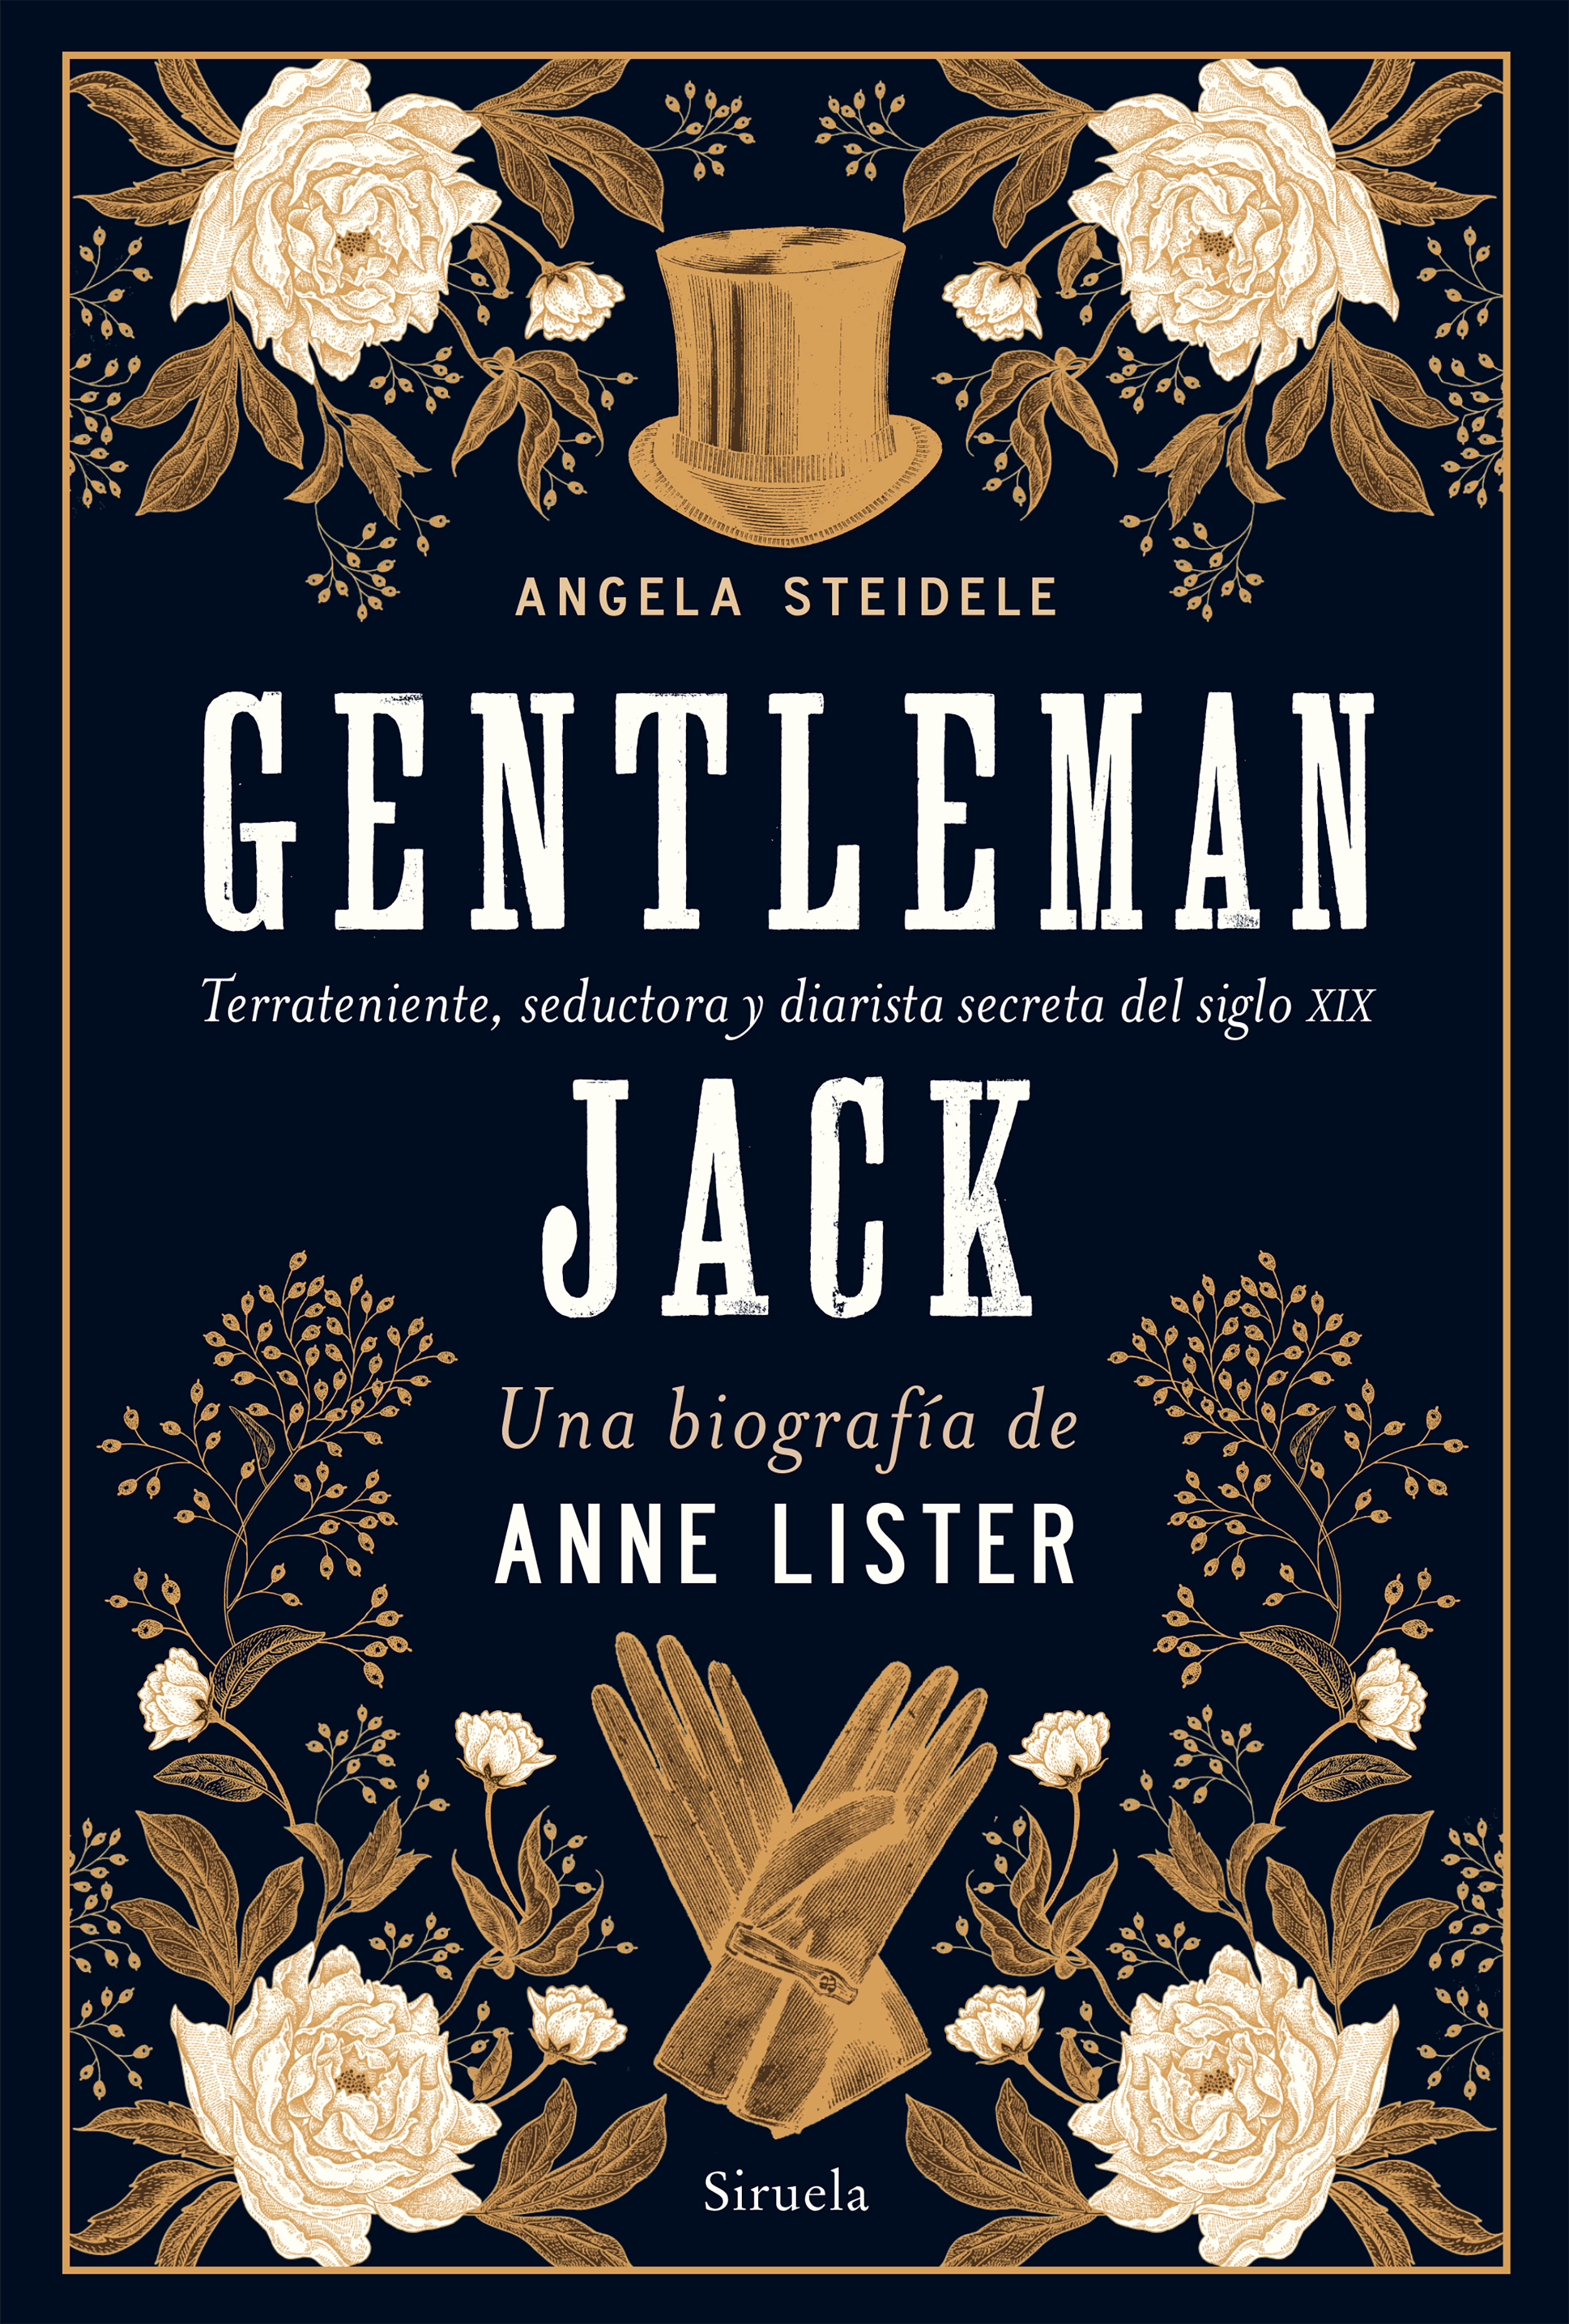 Gentleman Jack: una biografía de Anne Lister